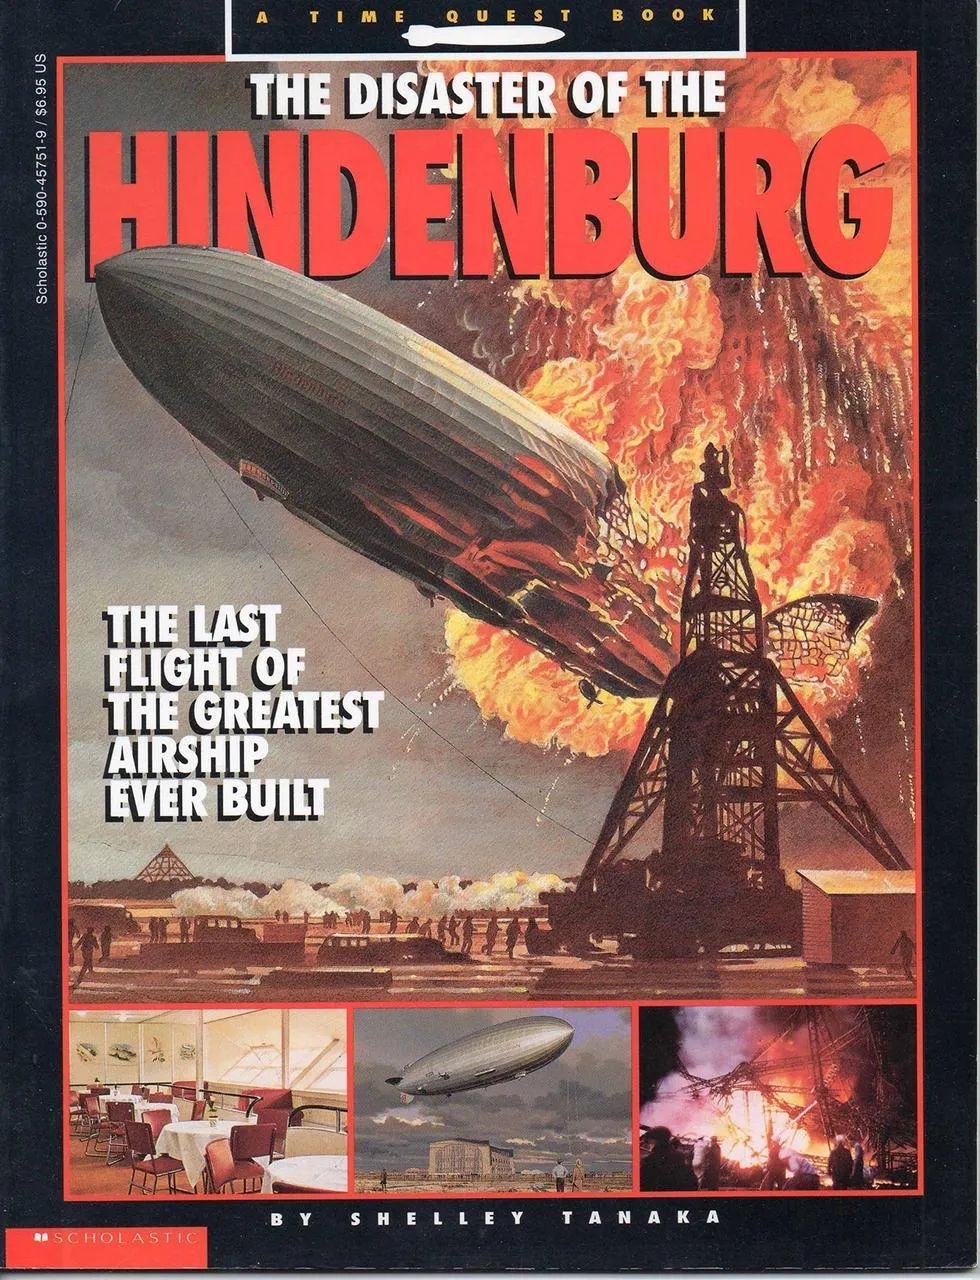 安德森認為興登堡空難是可以完全避免的認為災難